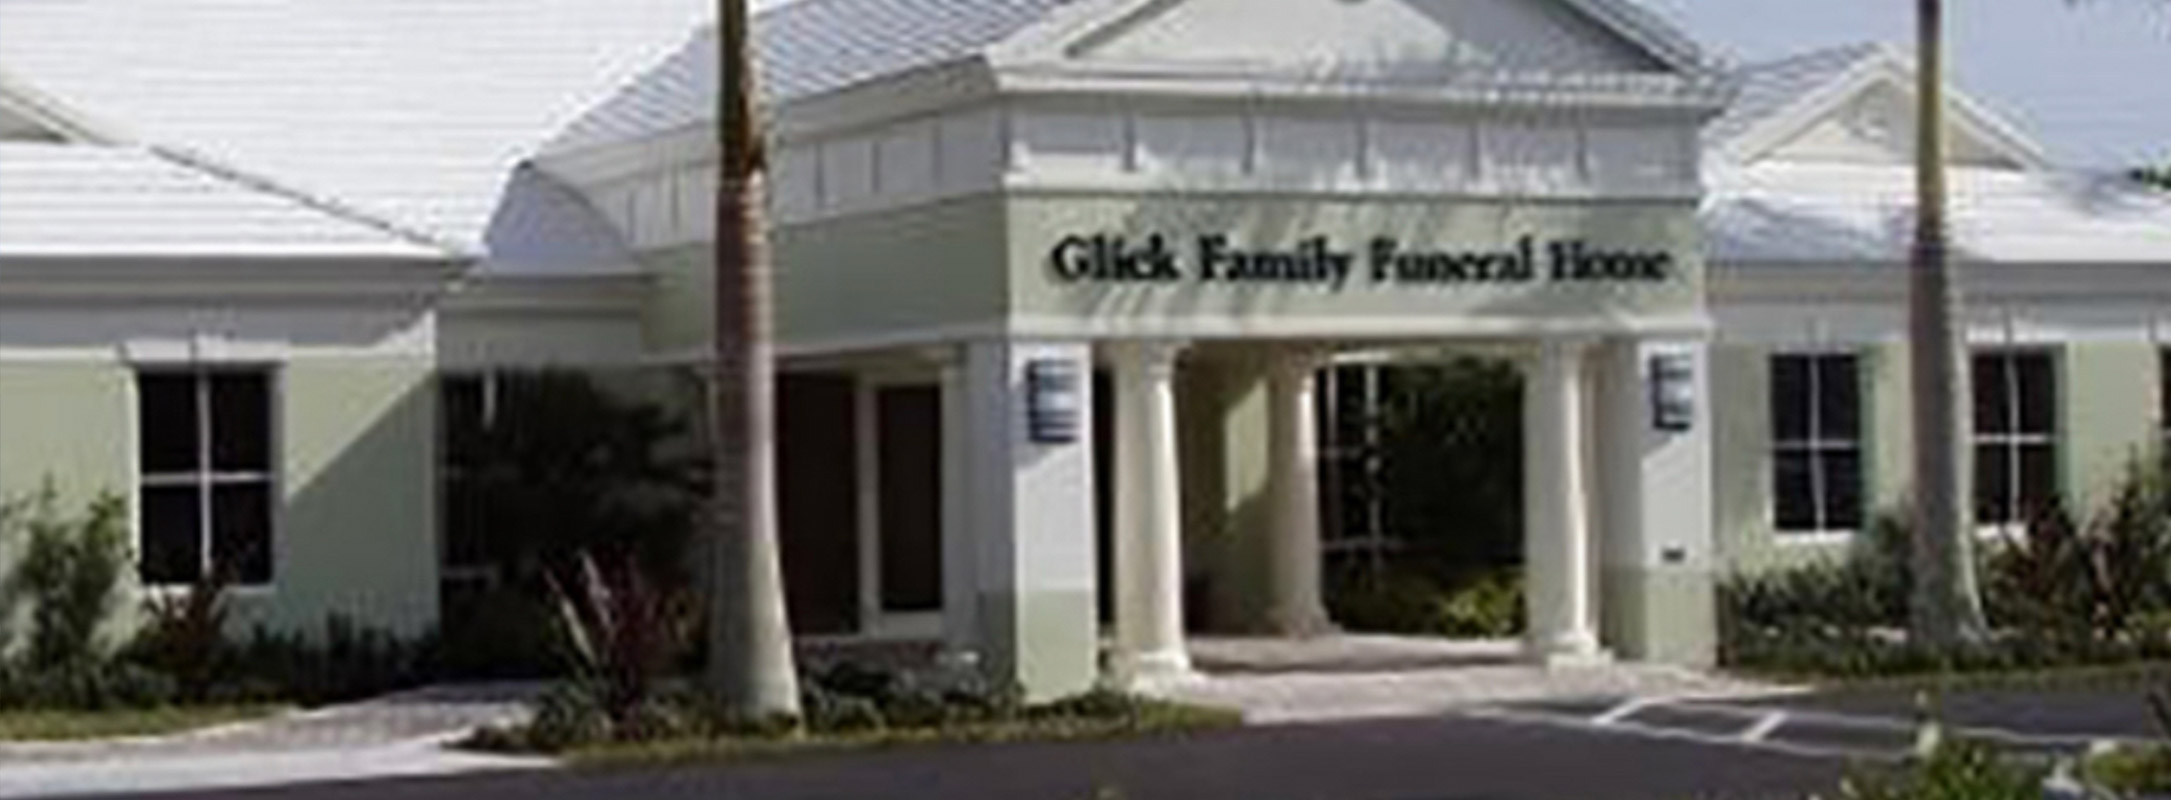 Glick Family Funeral Home, Boca Raton